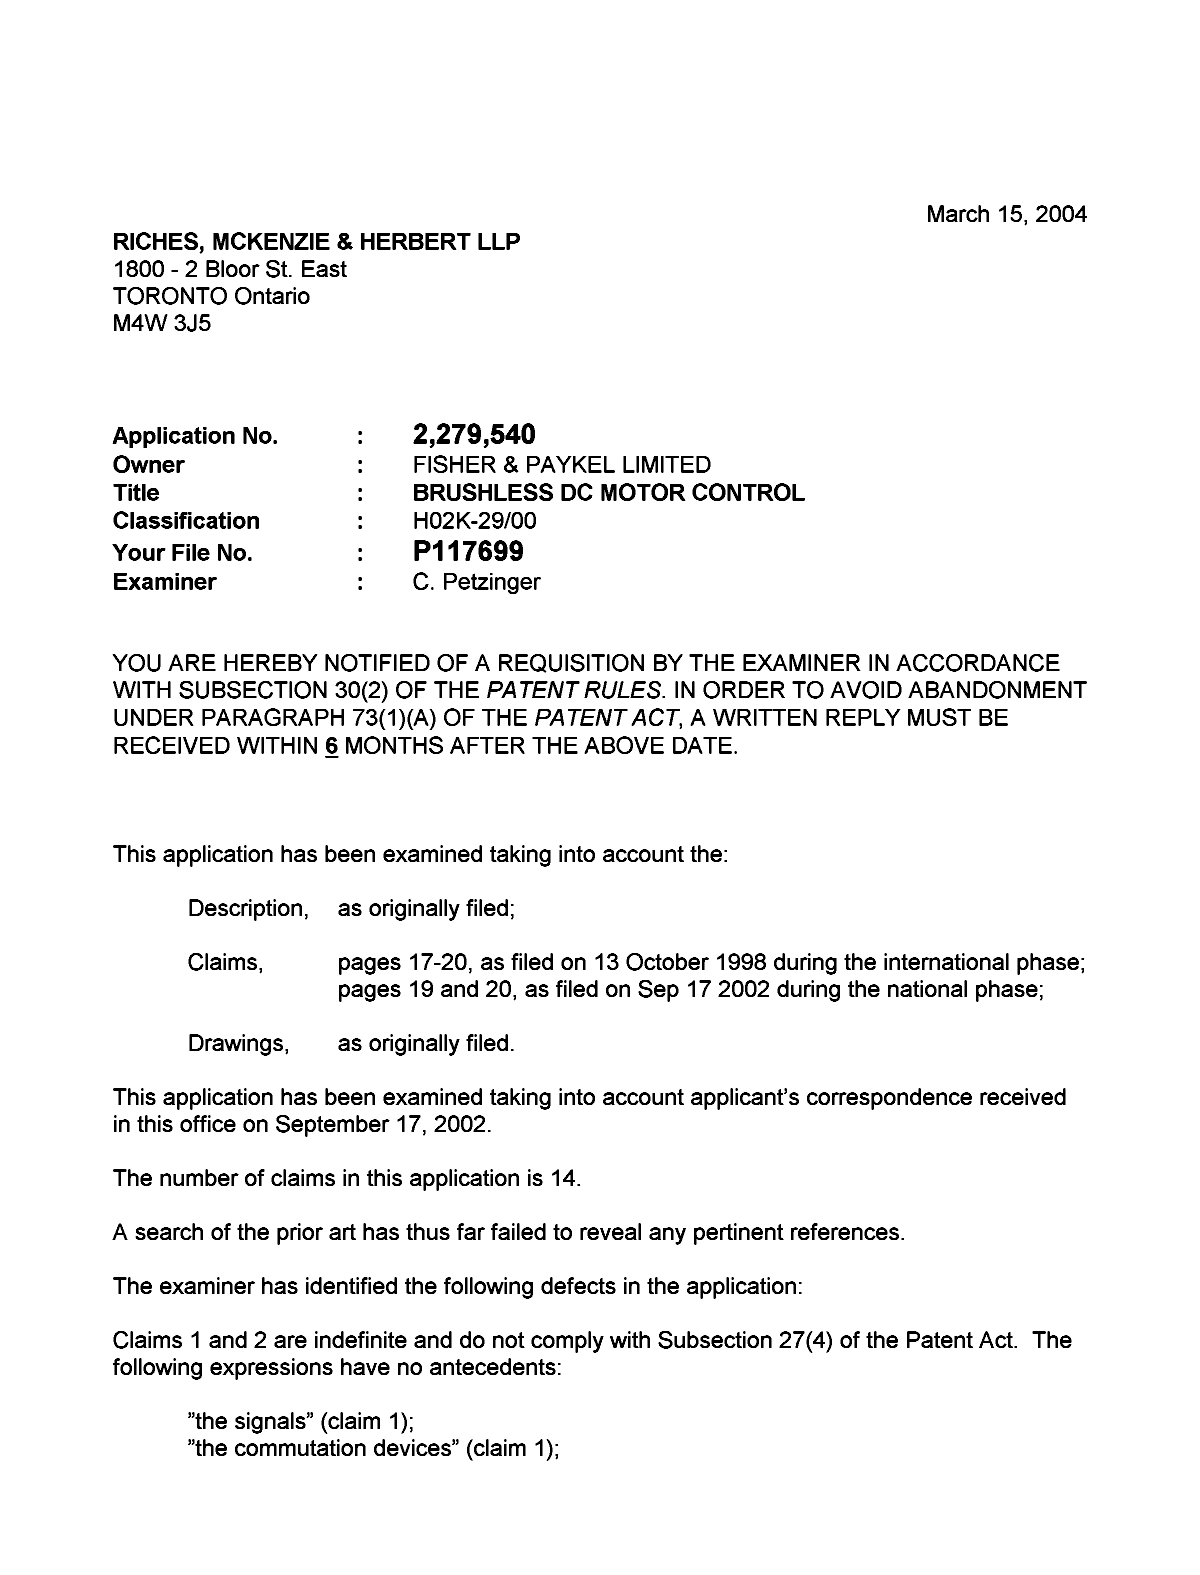 Document de brevet canadien 2279540. Poursuite-Amendment 20040315. Image 1 de 2